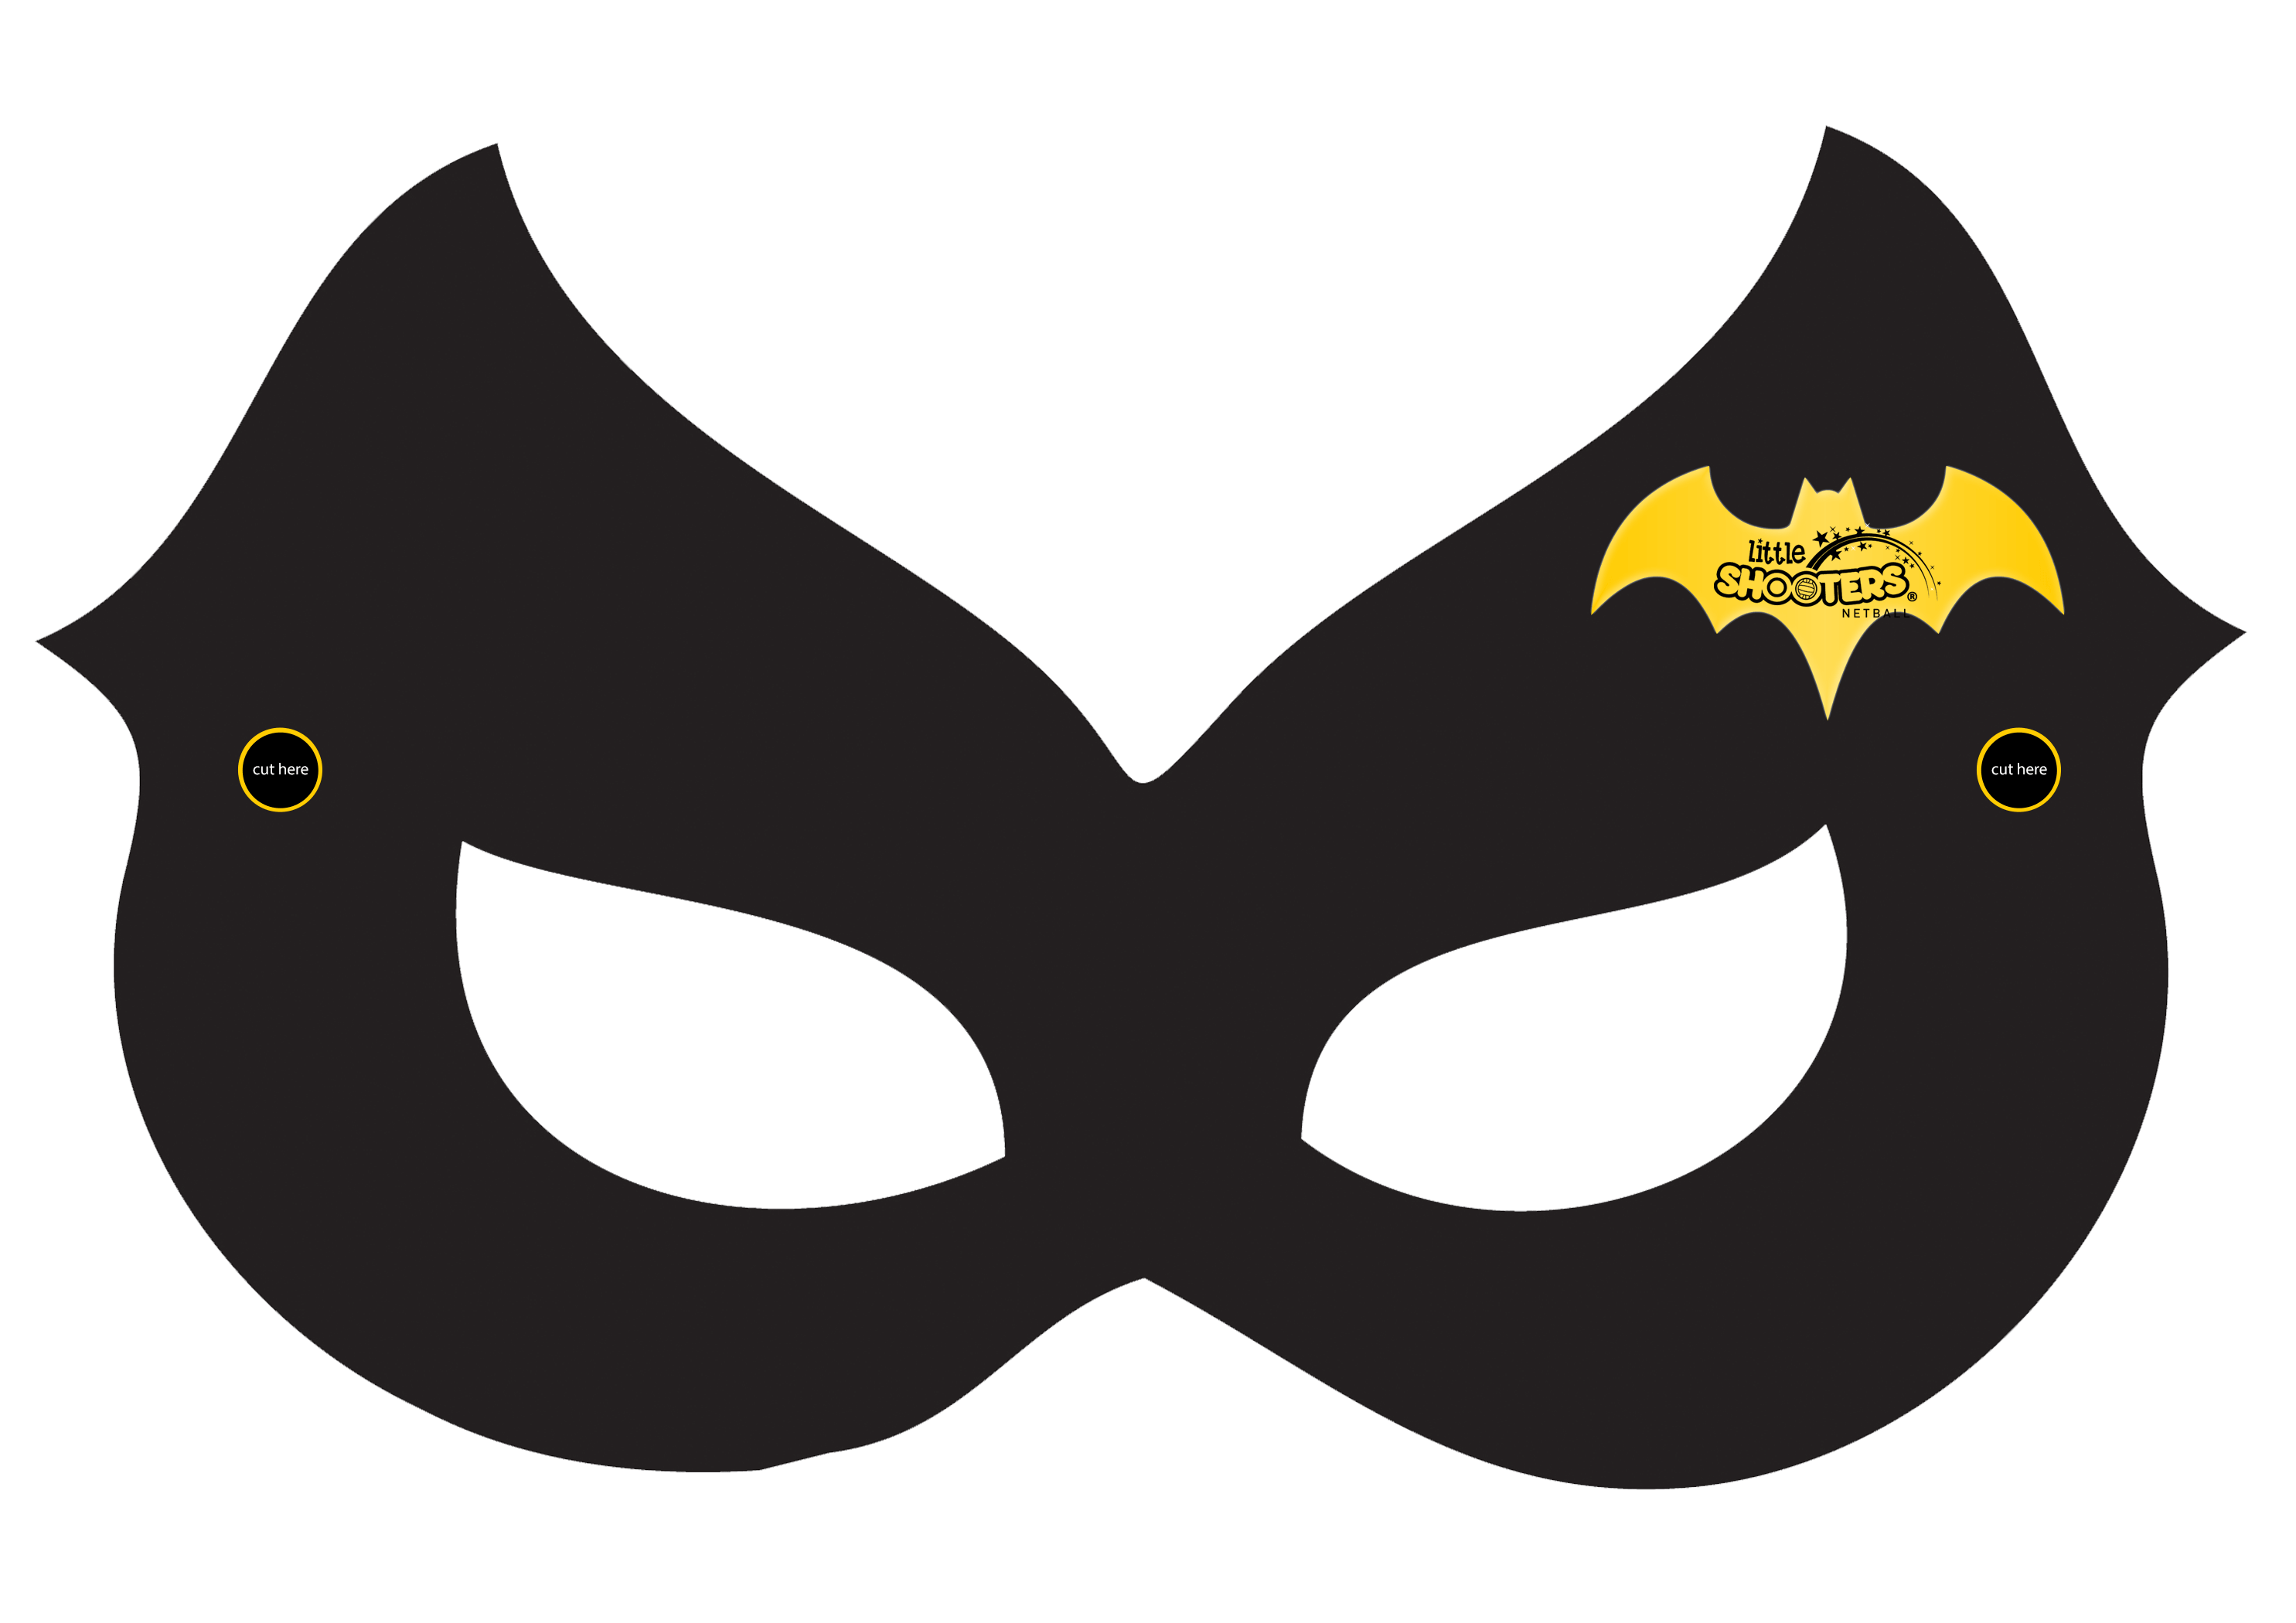 batgirl-batman-mask-superhero-batgirl-png-download-2970-2100-free